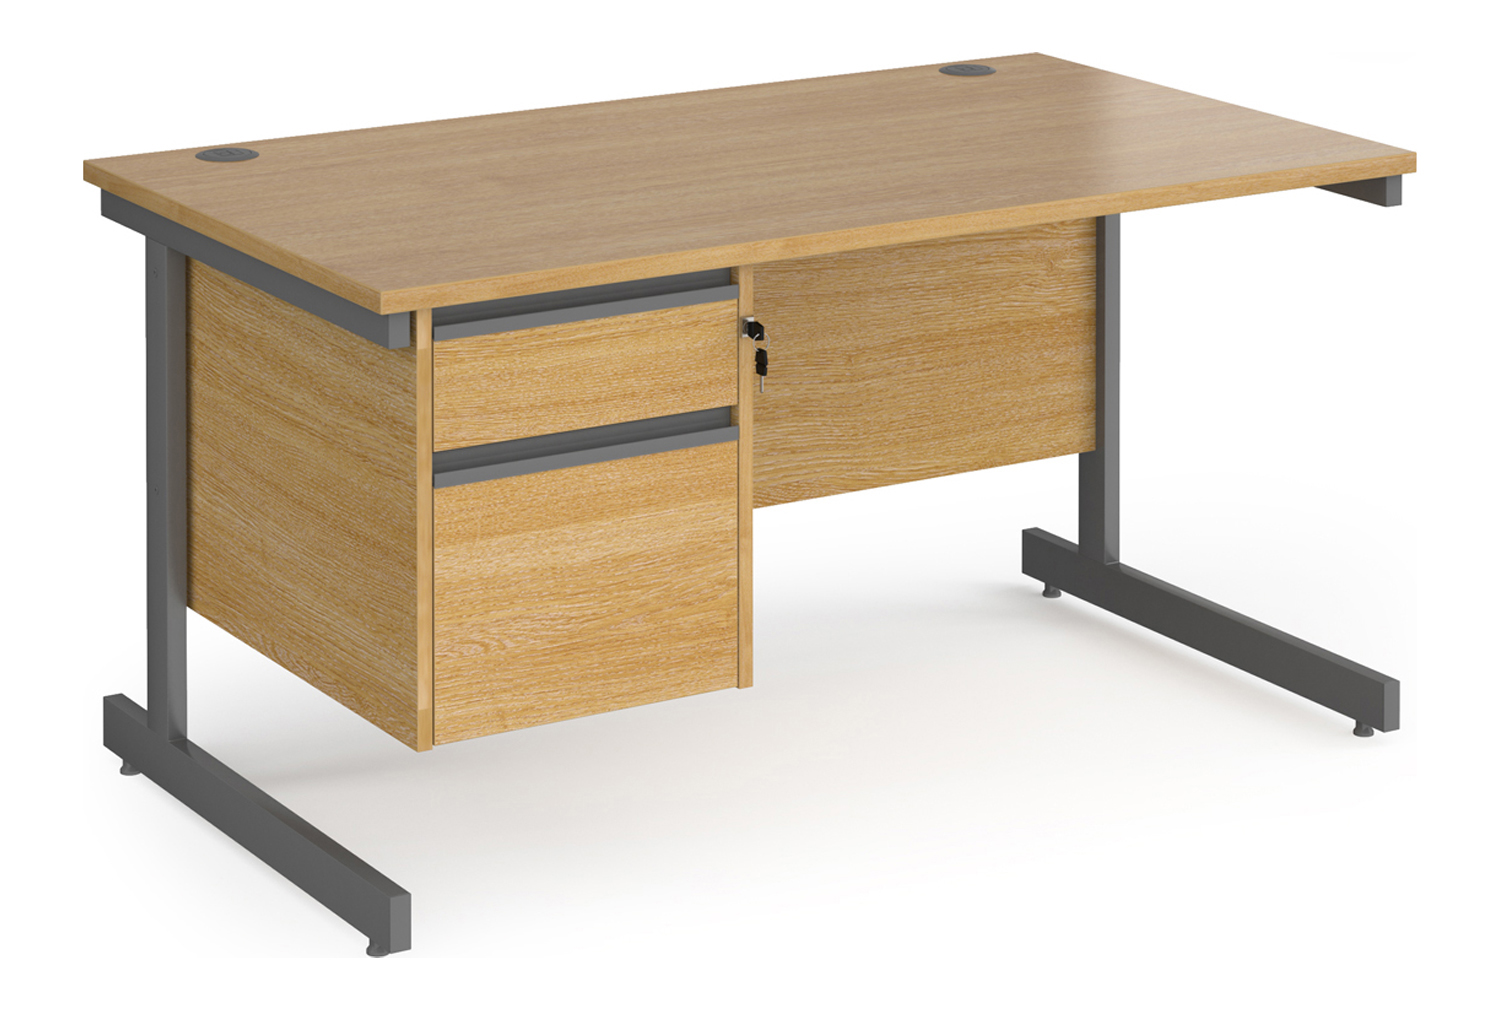 Value Line Classic+ Rectangular C-Leg Office Desk 2 Drawers (Graphite Leg), 140wx80dx73h (cm), Oak, Express Delivery